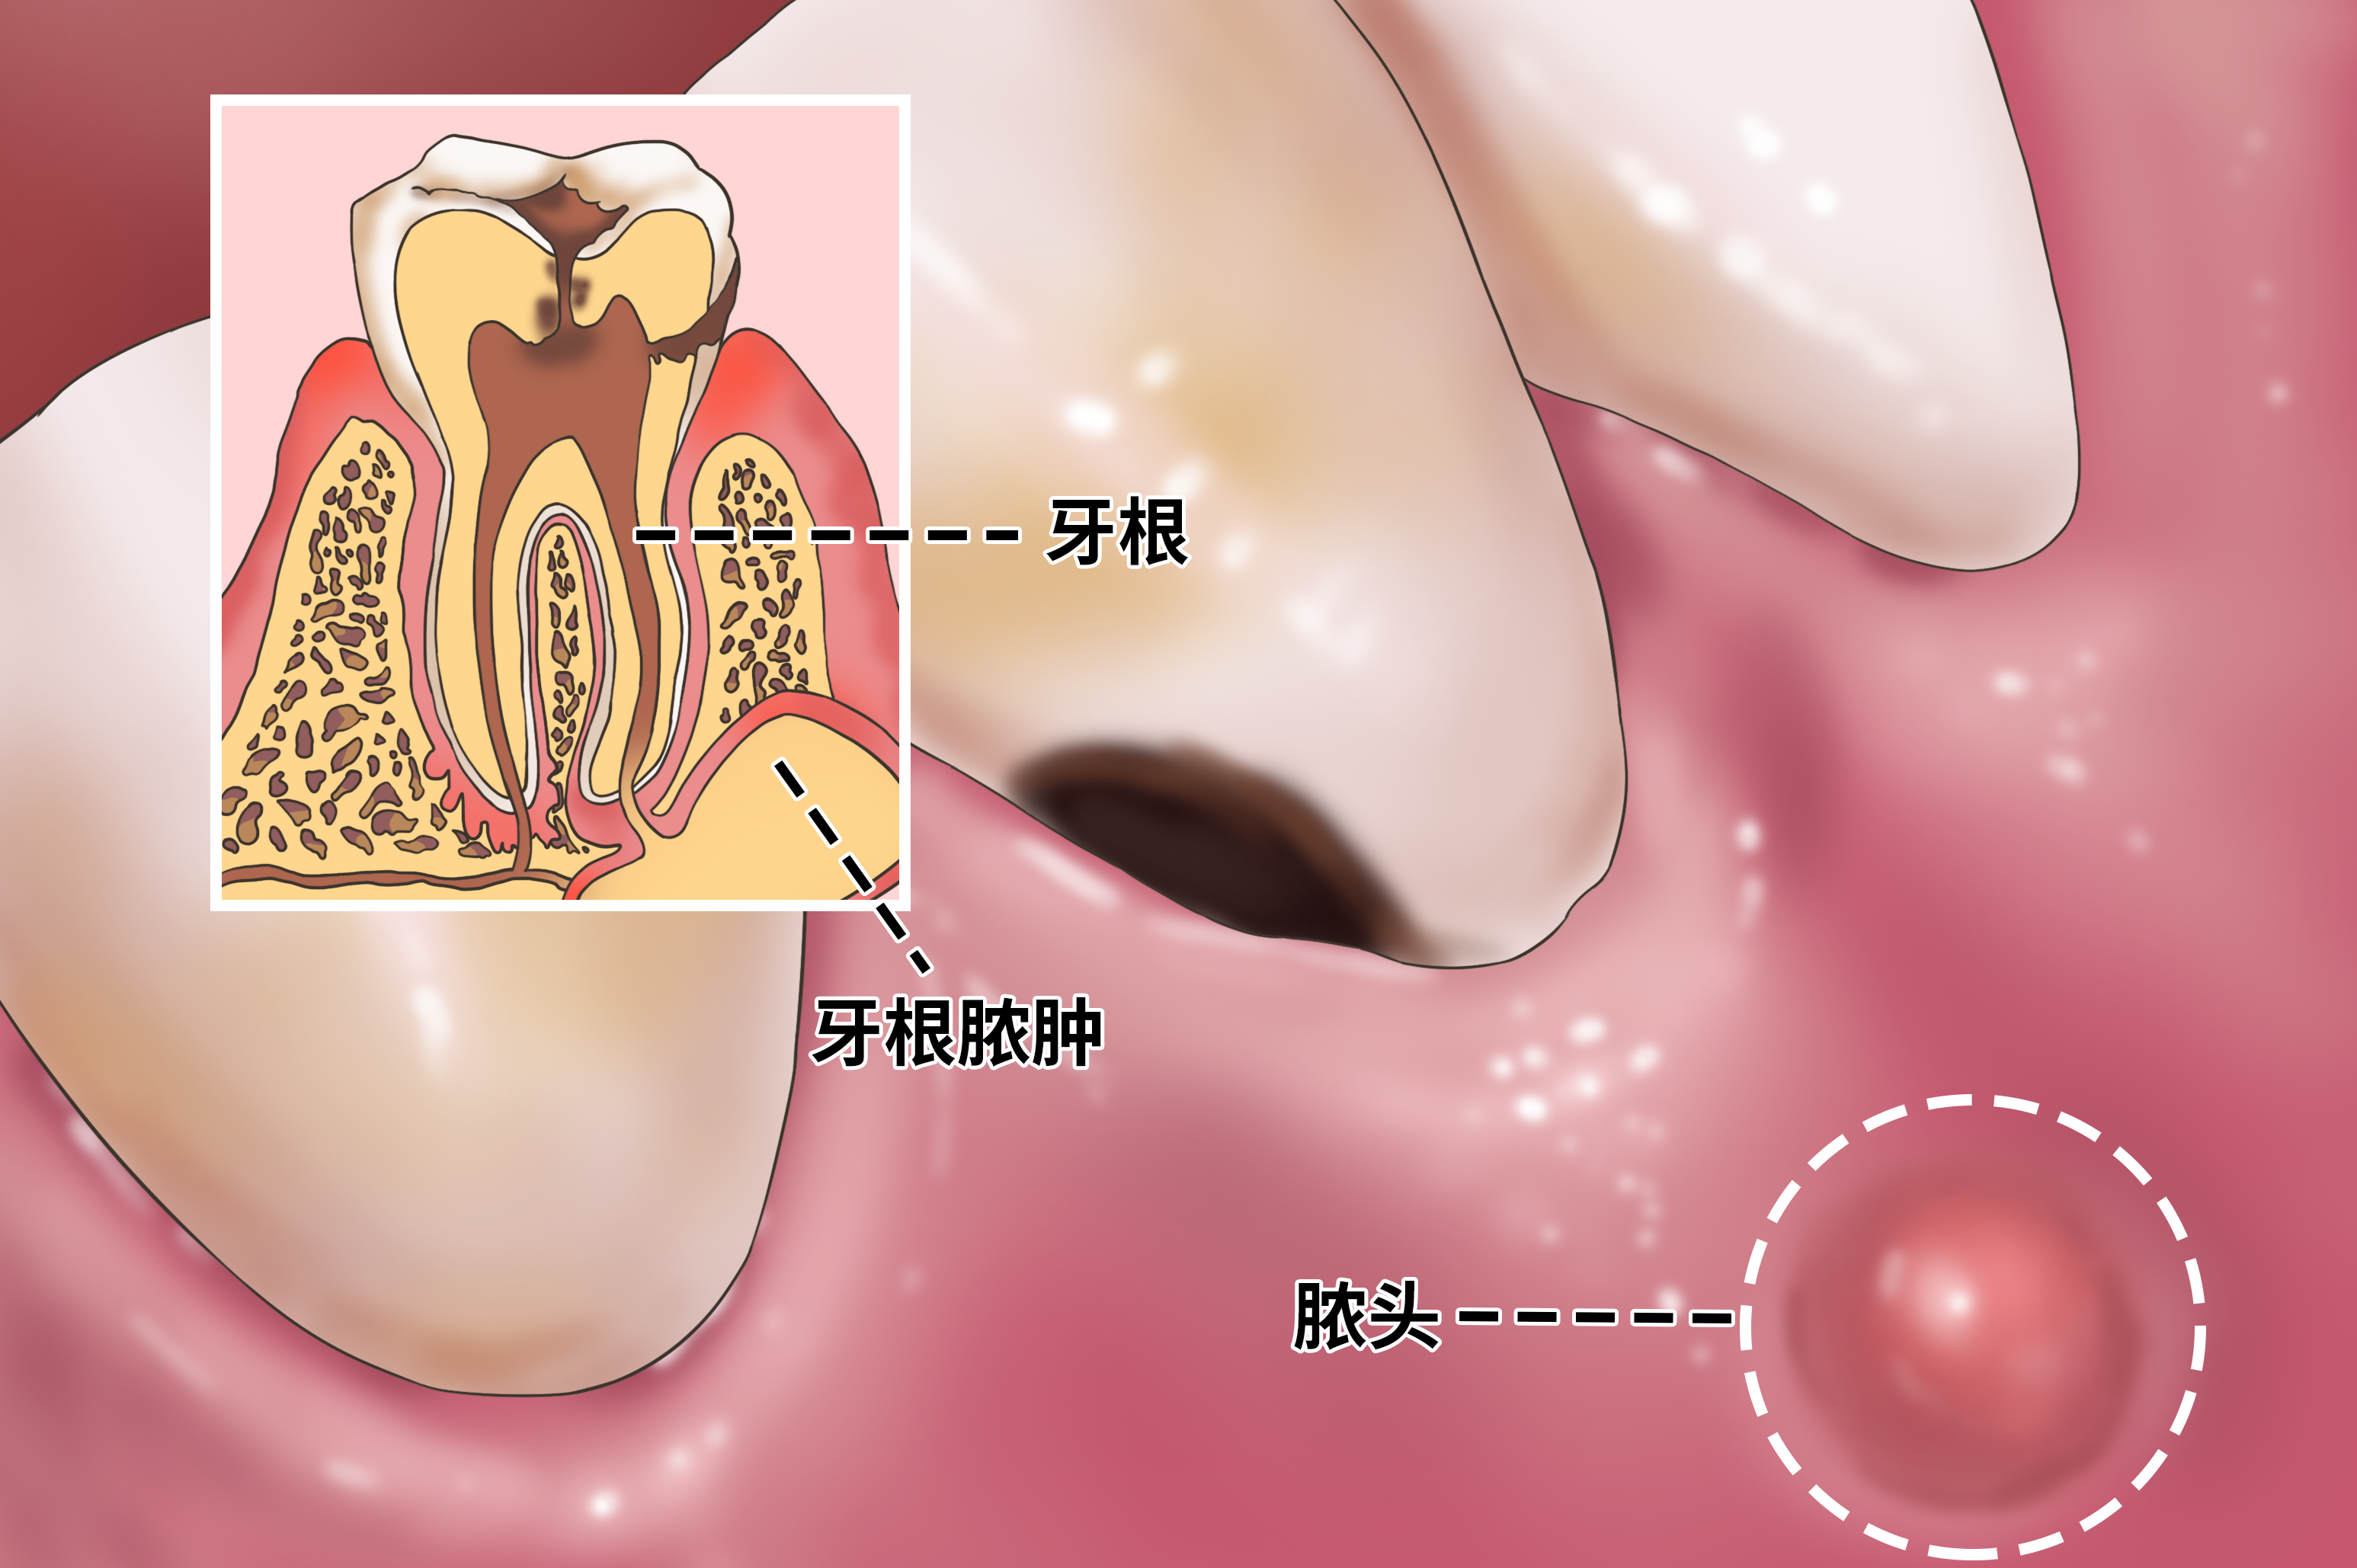 牙根脓肿为什么要通过根管治疗才行看完你知道原因了吗